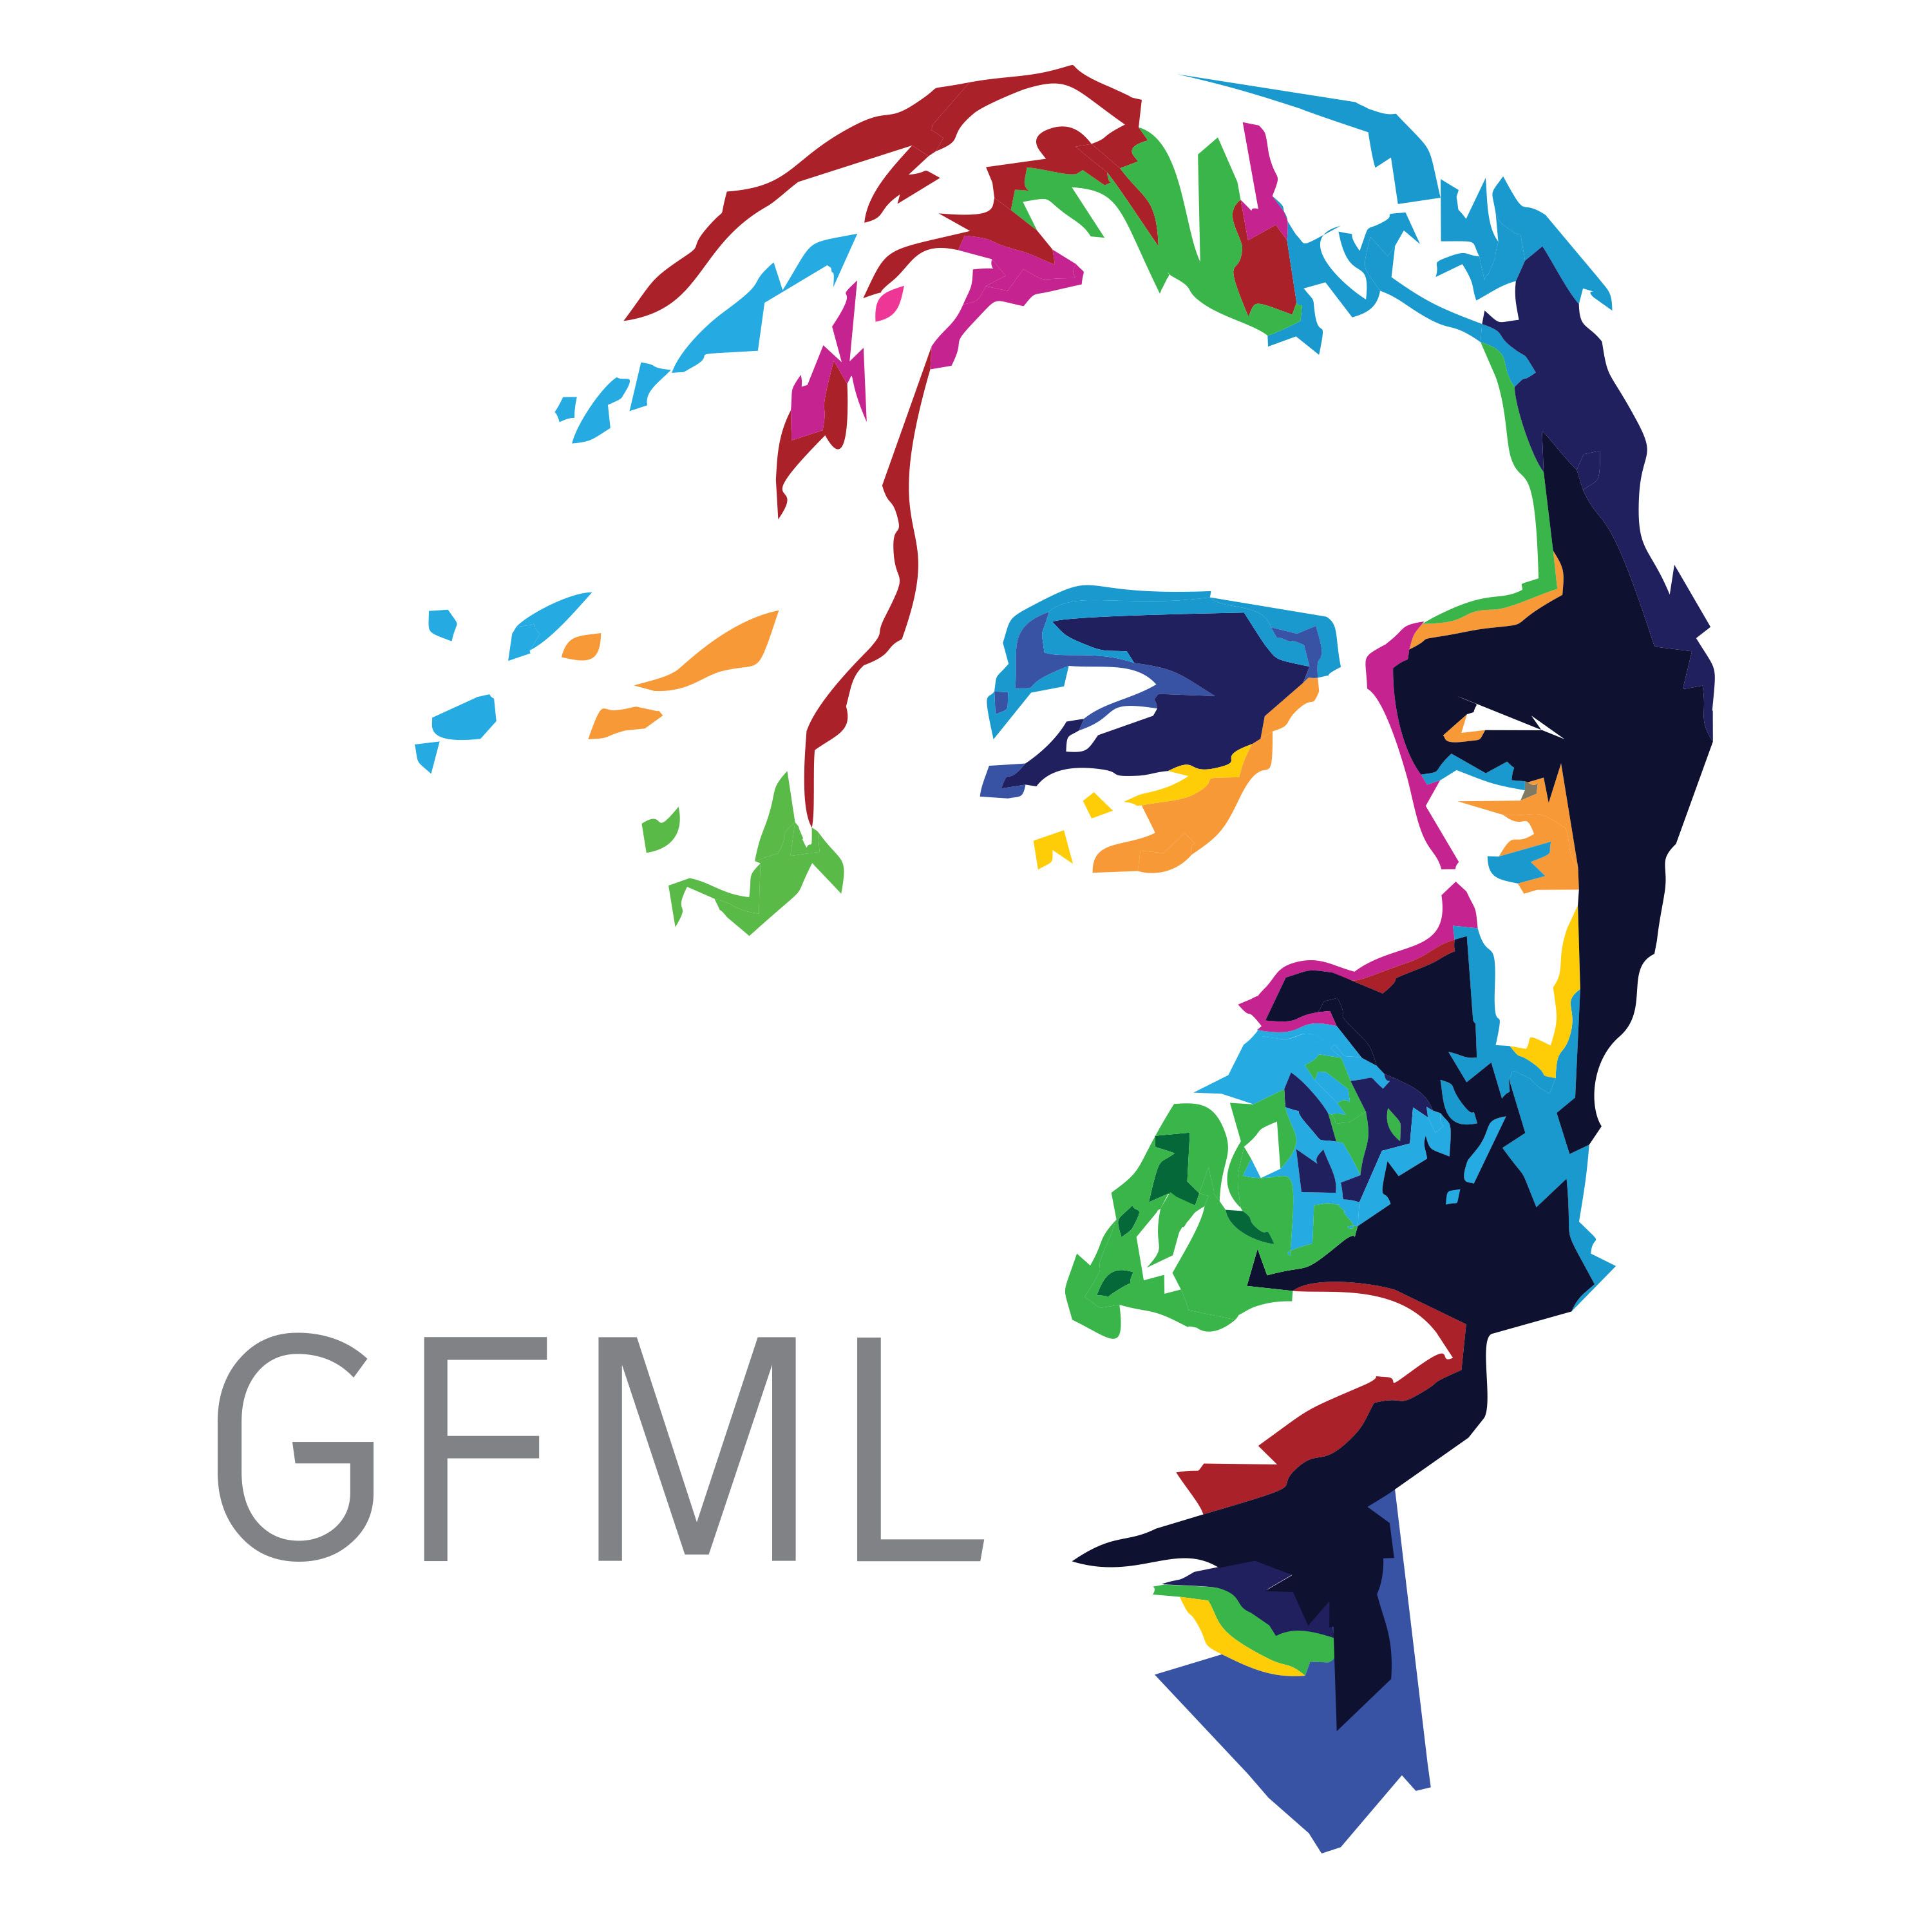 Glas GFML 7, 26. 11. 2020